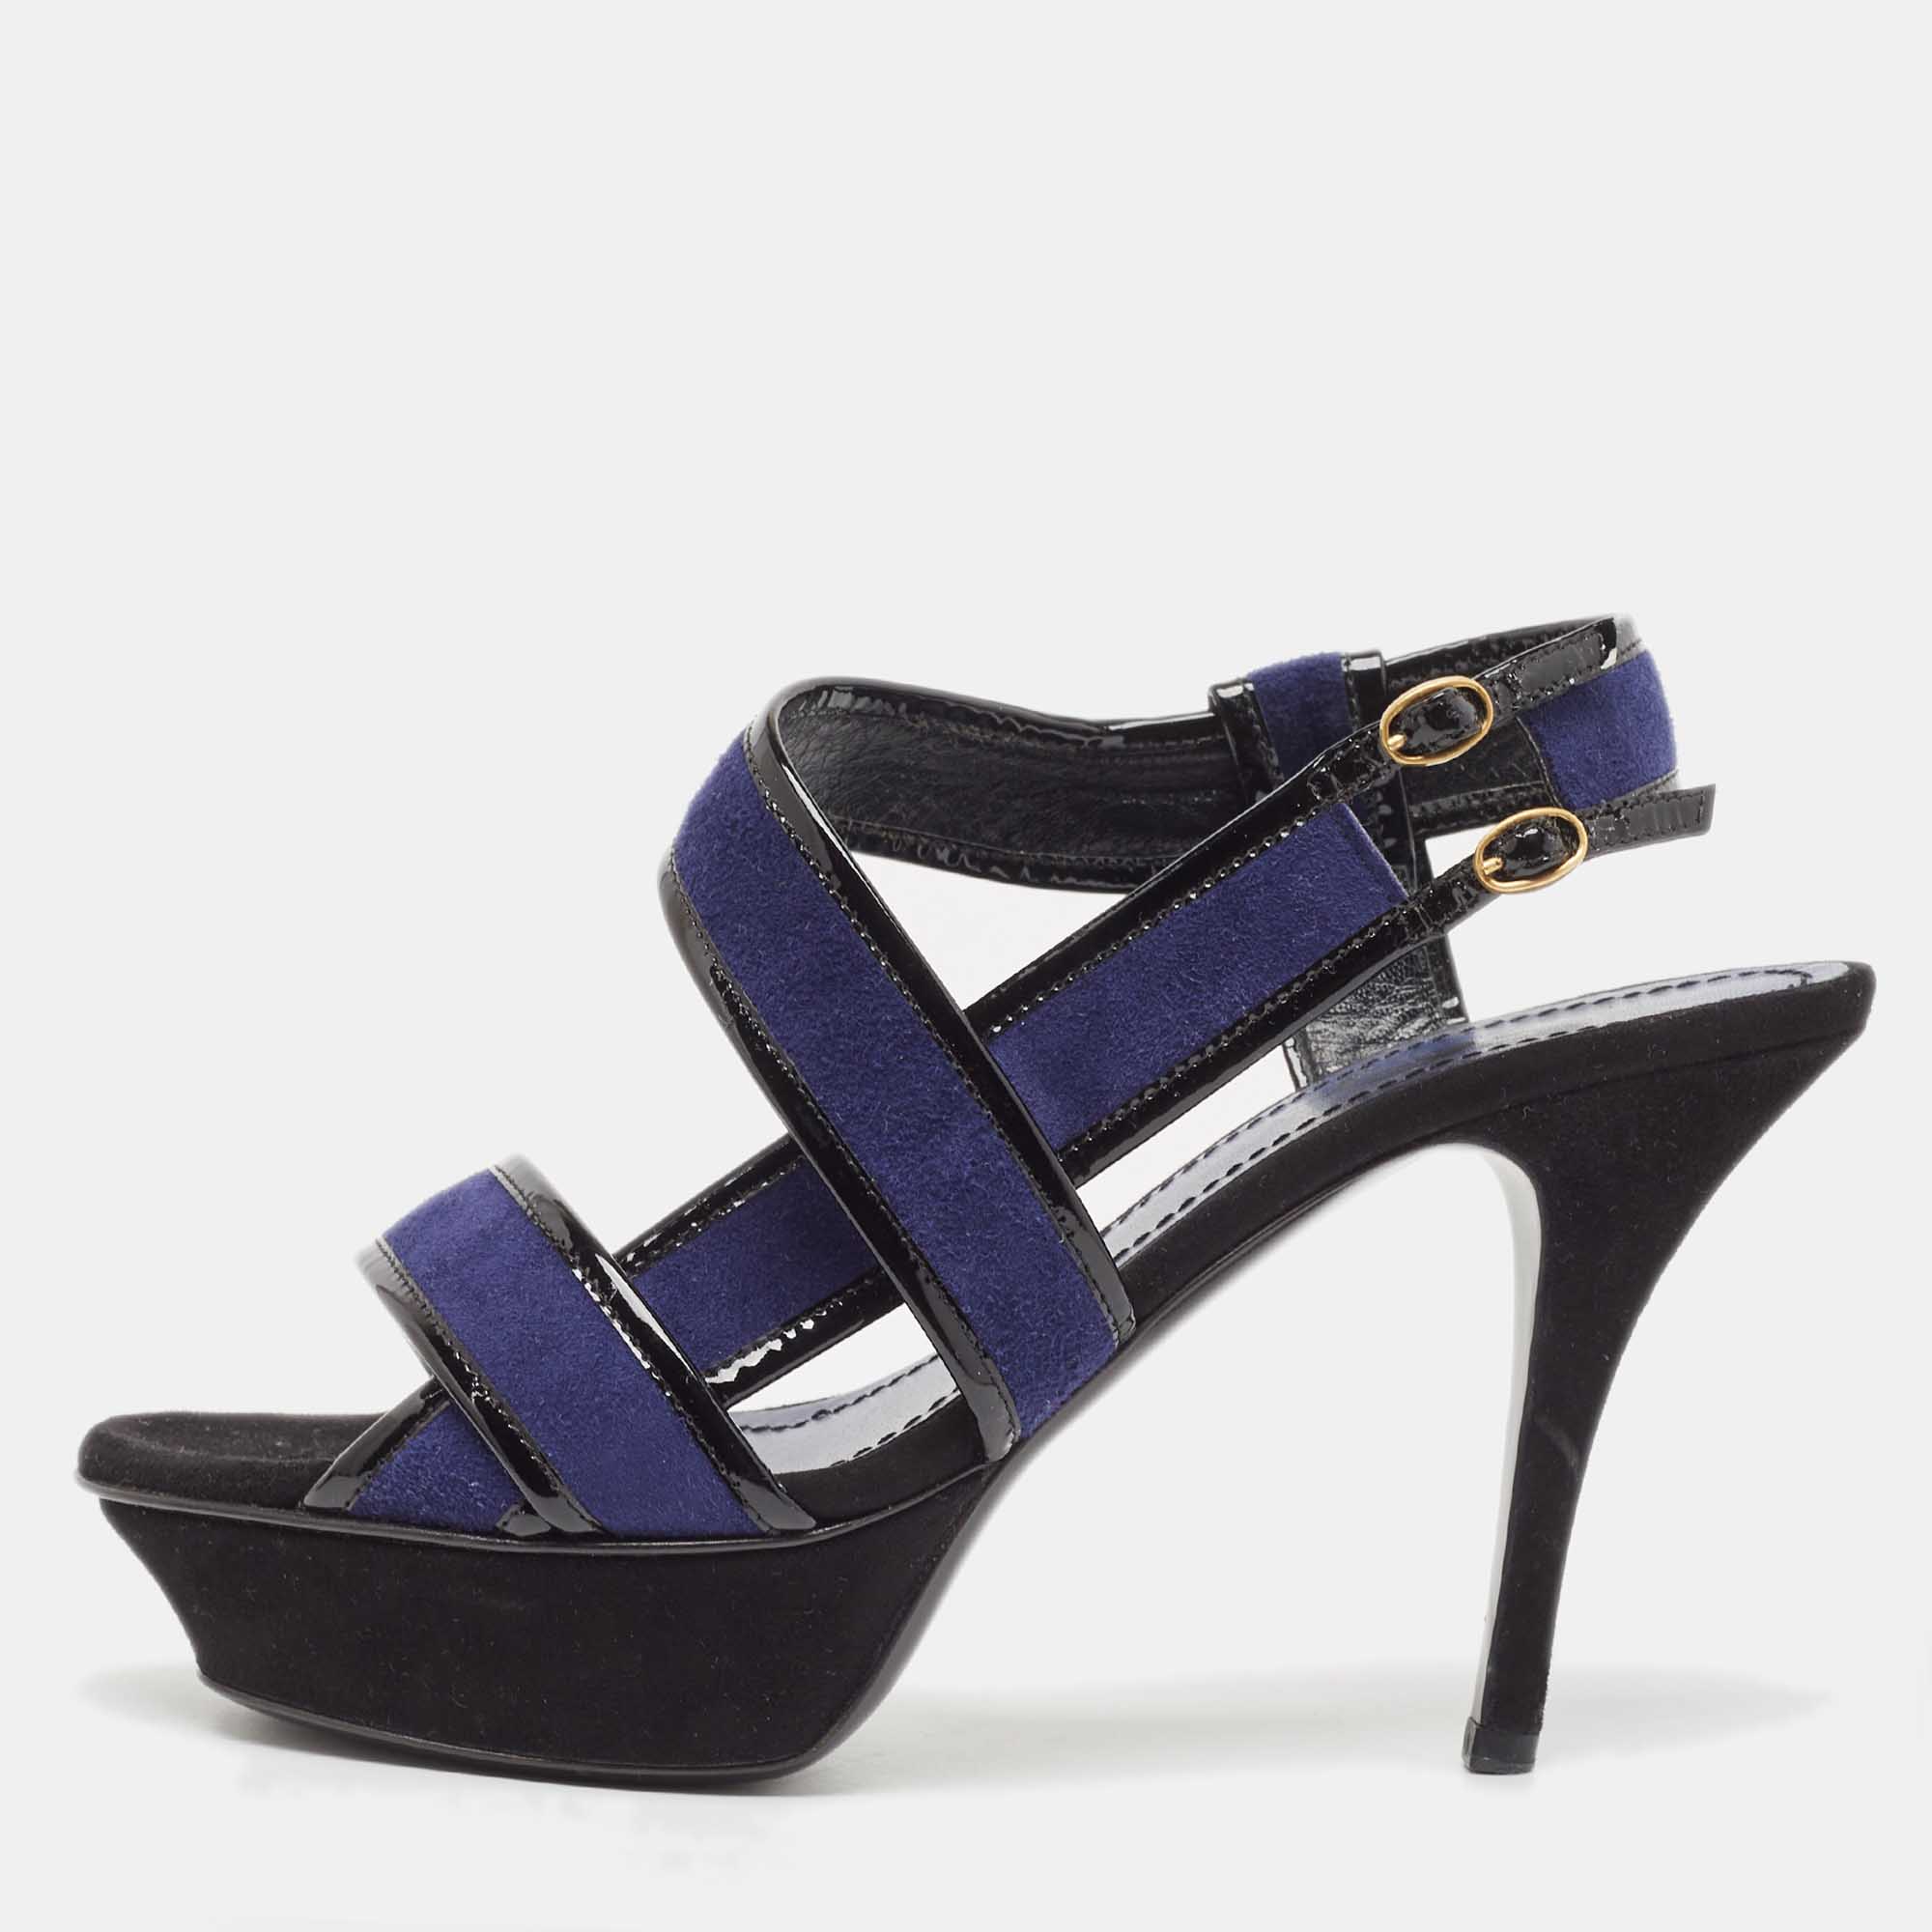 Saint laurent paris saint laurent navy blue/patent leather platform ankle strap sandals size 37.5